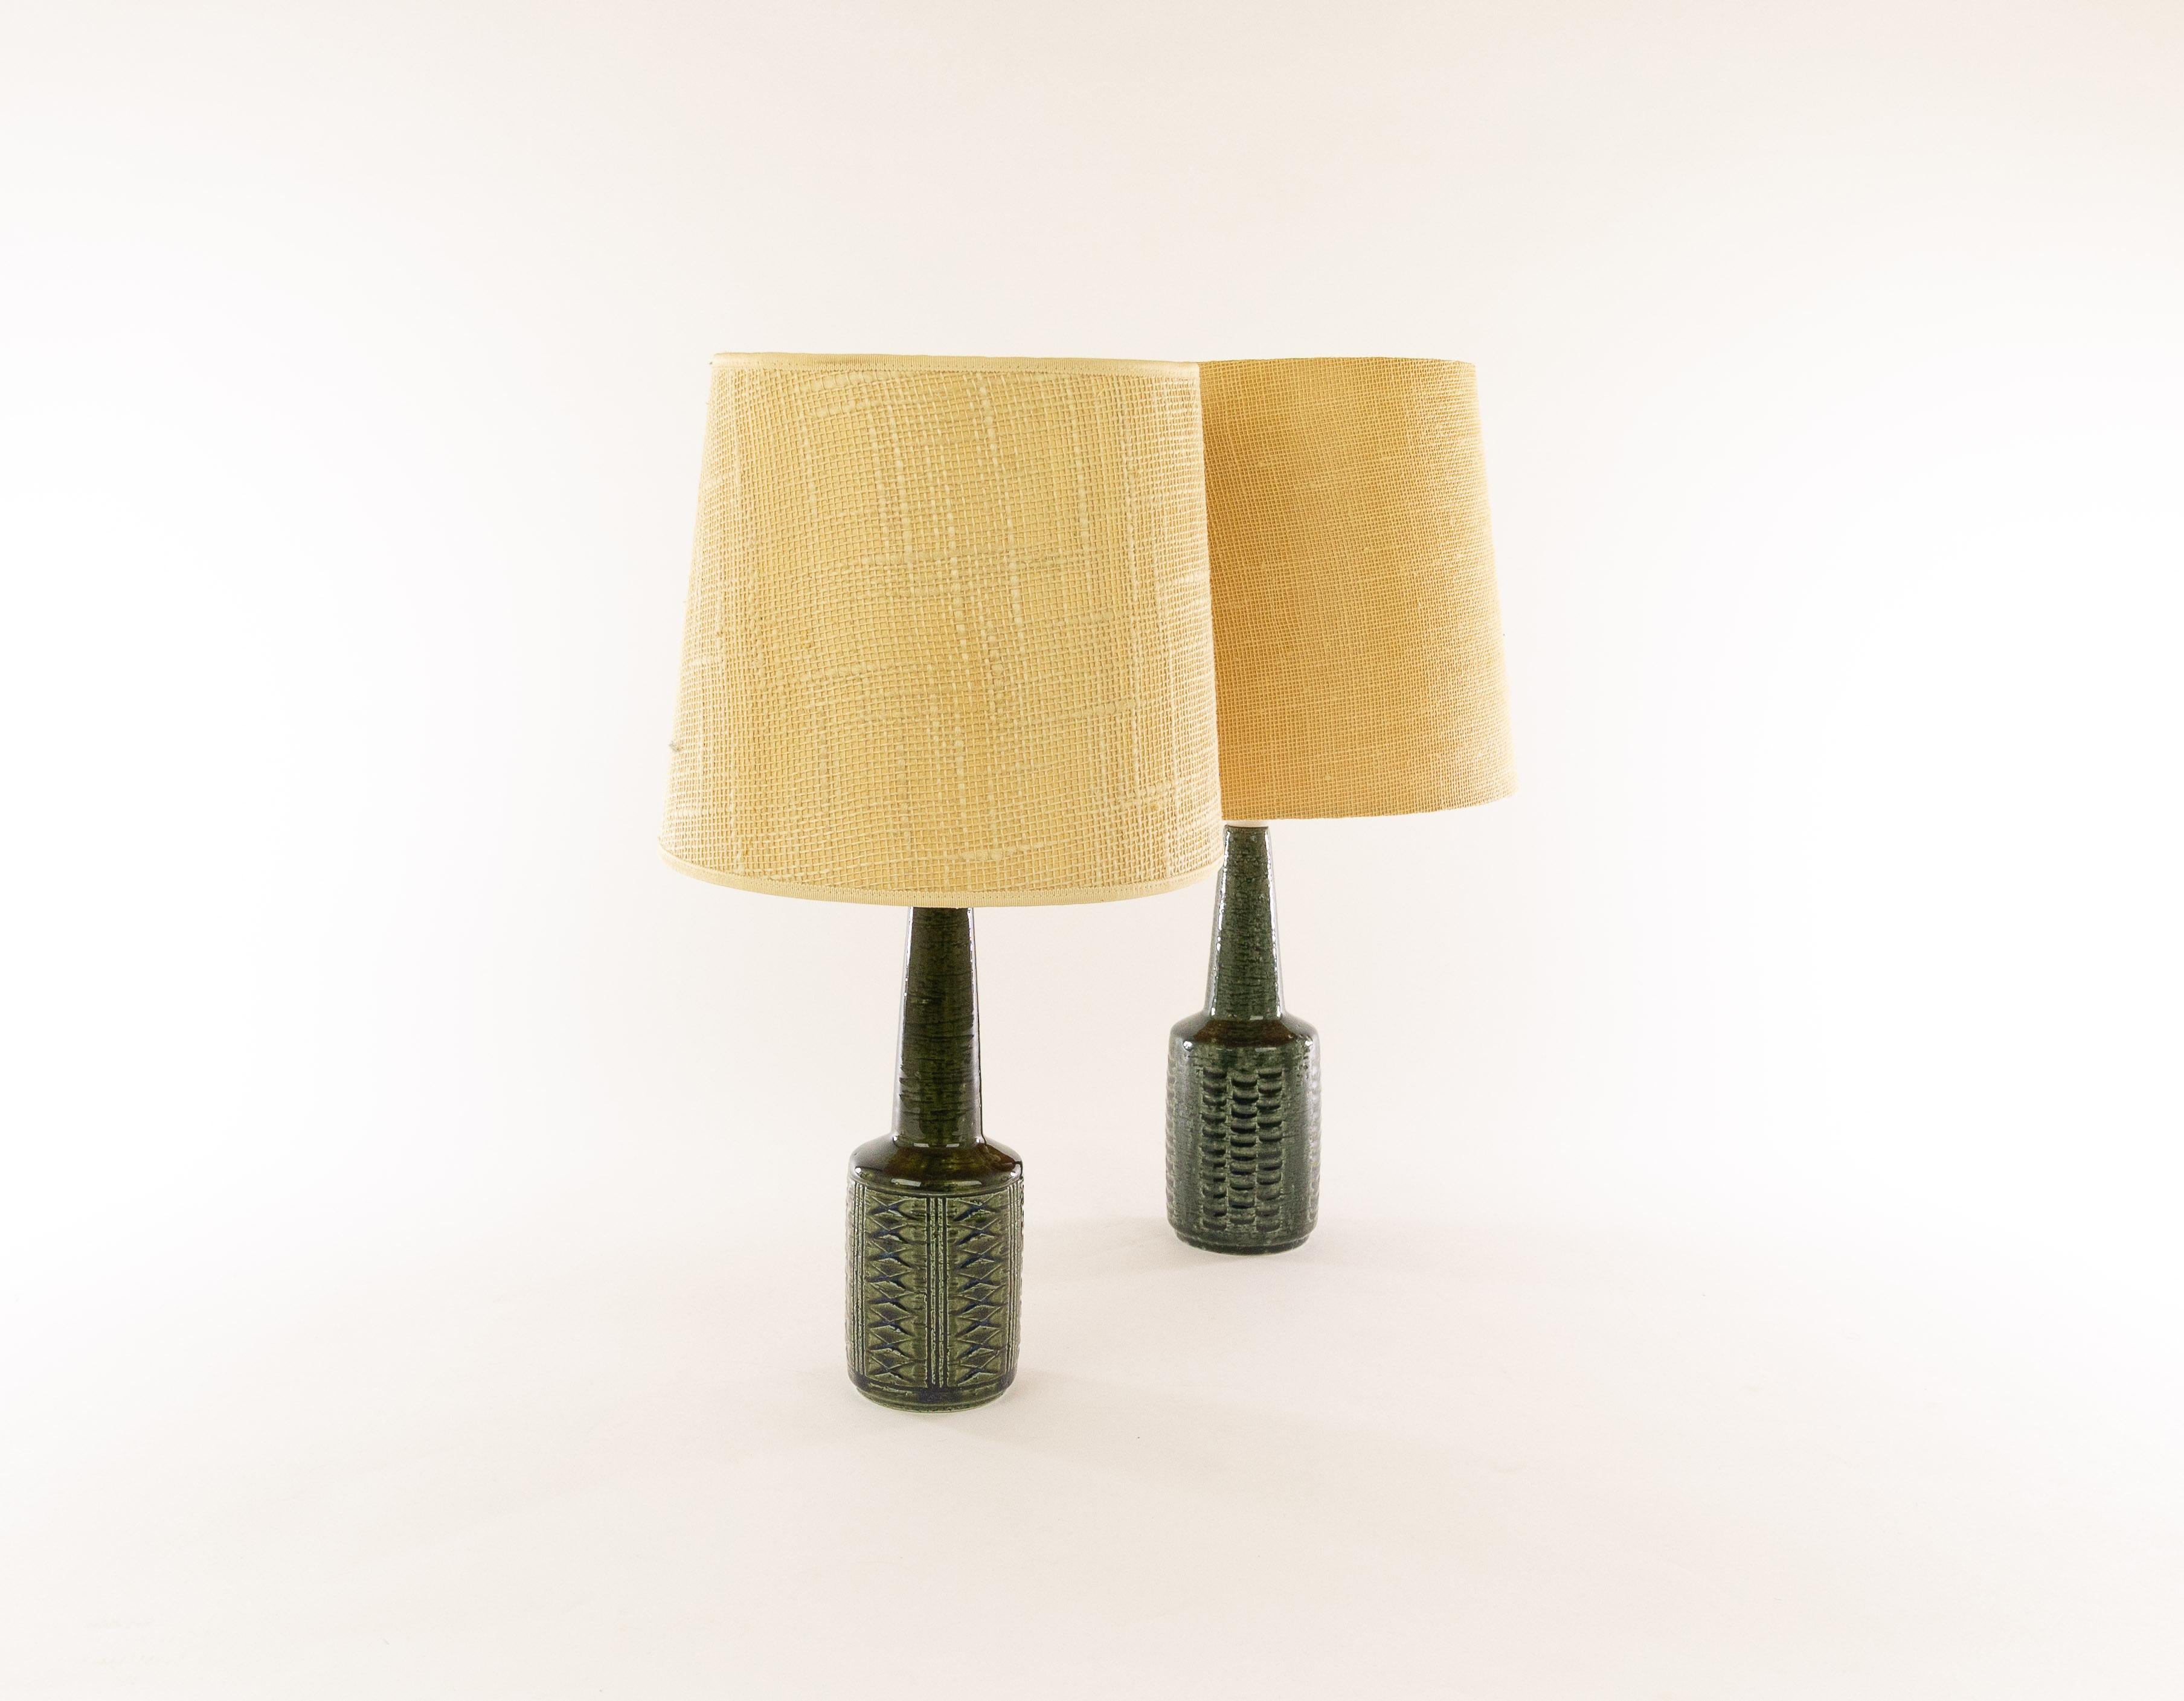 Deux charmantes lampes de table danoises en chamotte (argile texturée) modèle DL/21 à décor imprimé par Annelise et Per Linnemann-Schmidt pour Palshus, Danemark, années 1960.

Palshus a produit une large gamme de lampes de table, avec différents